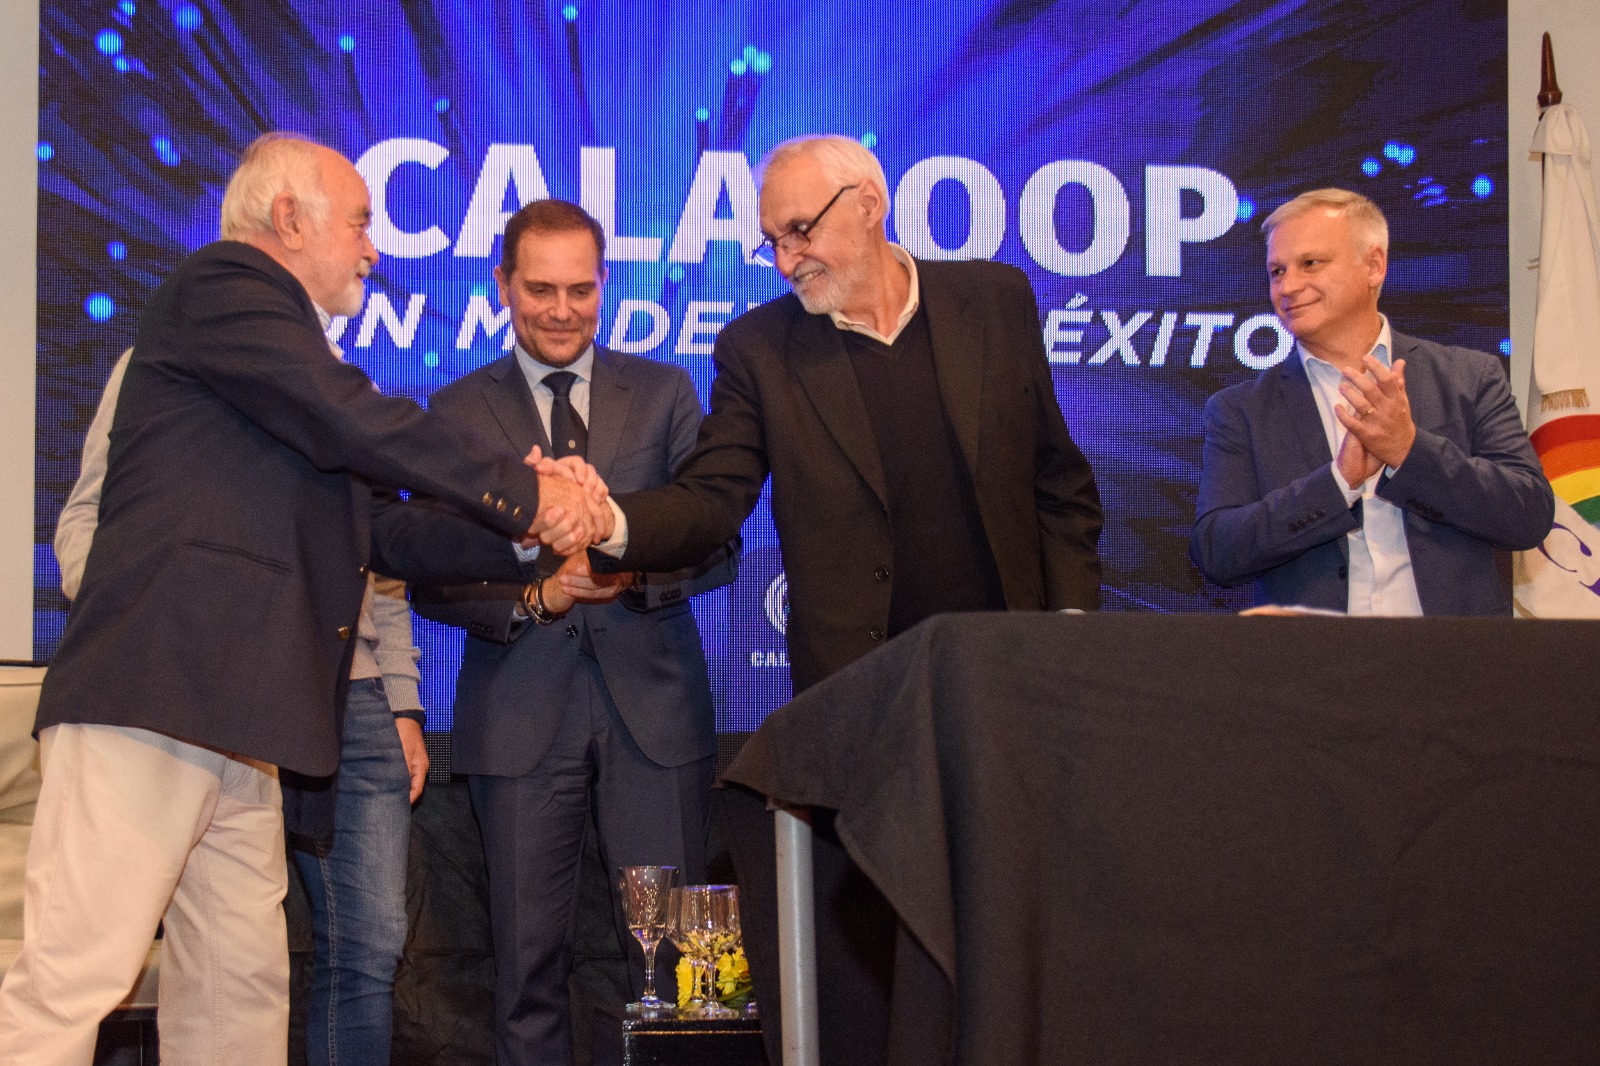 Firma de acuerdo marco entre Agencia Conectividad Córdoba y Calacoop